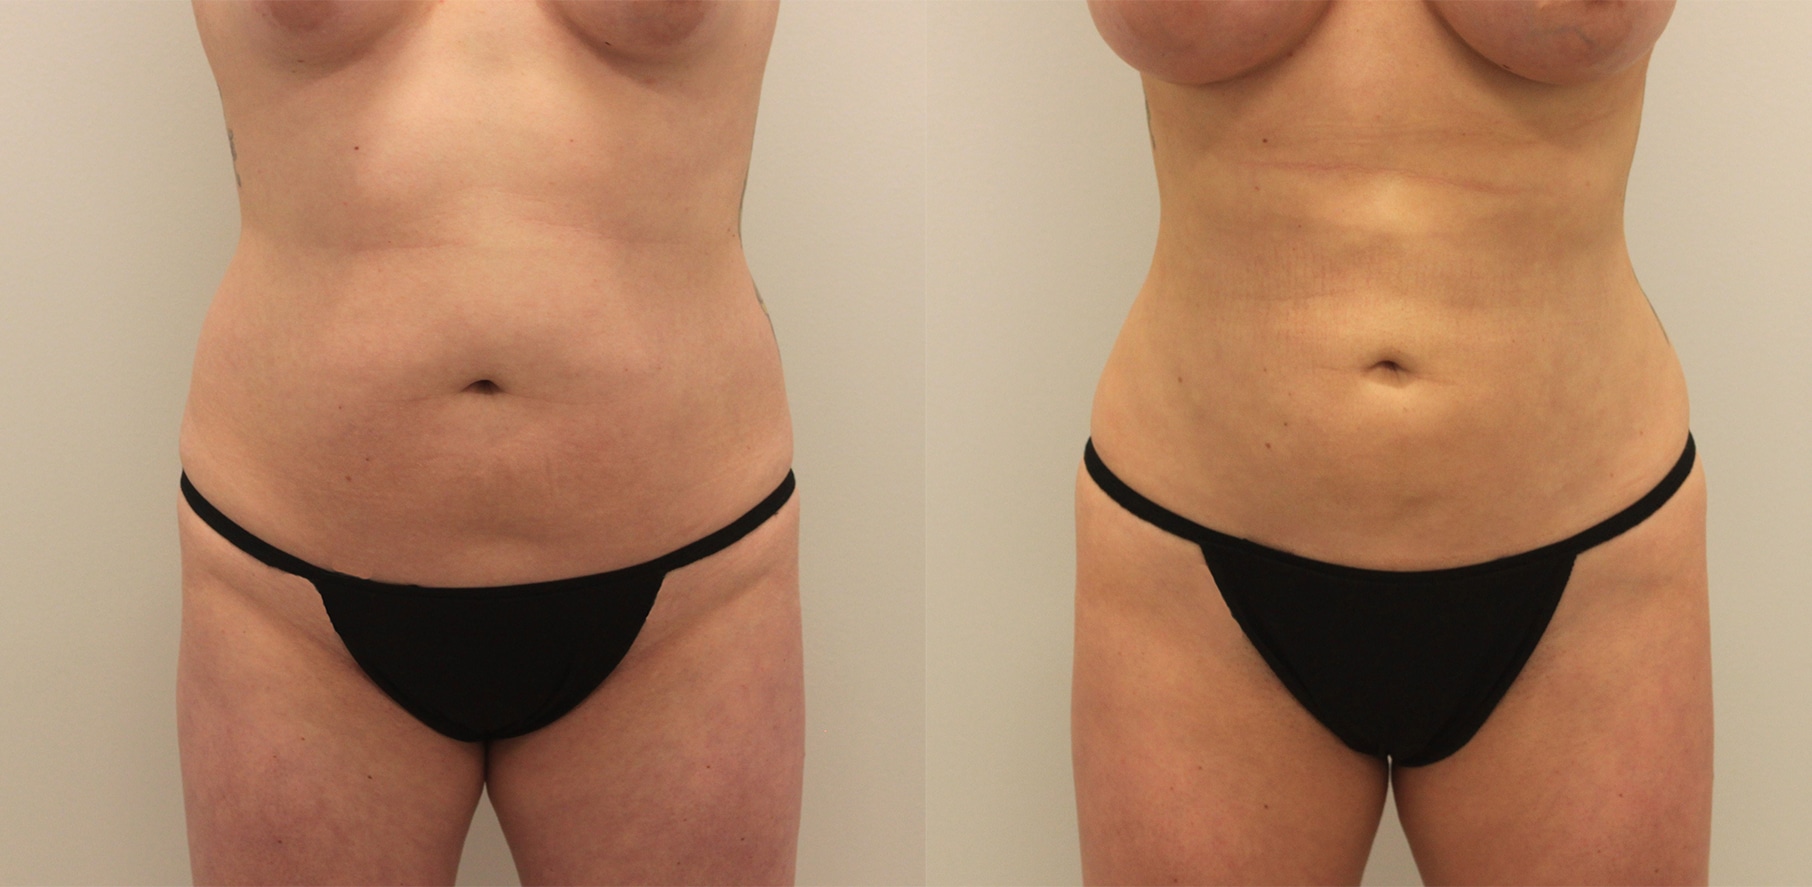 BodyTite vs. Tummy Tuck: Which Procedure is Best?